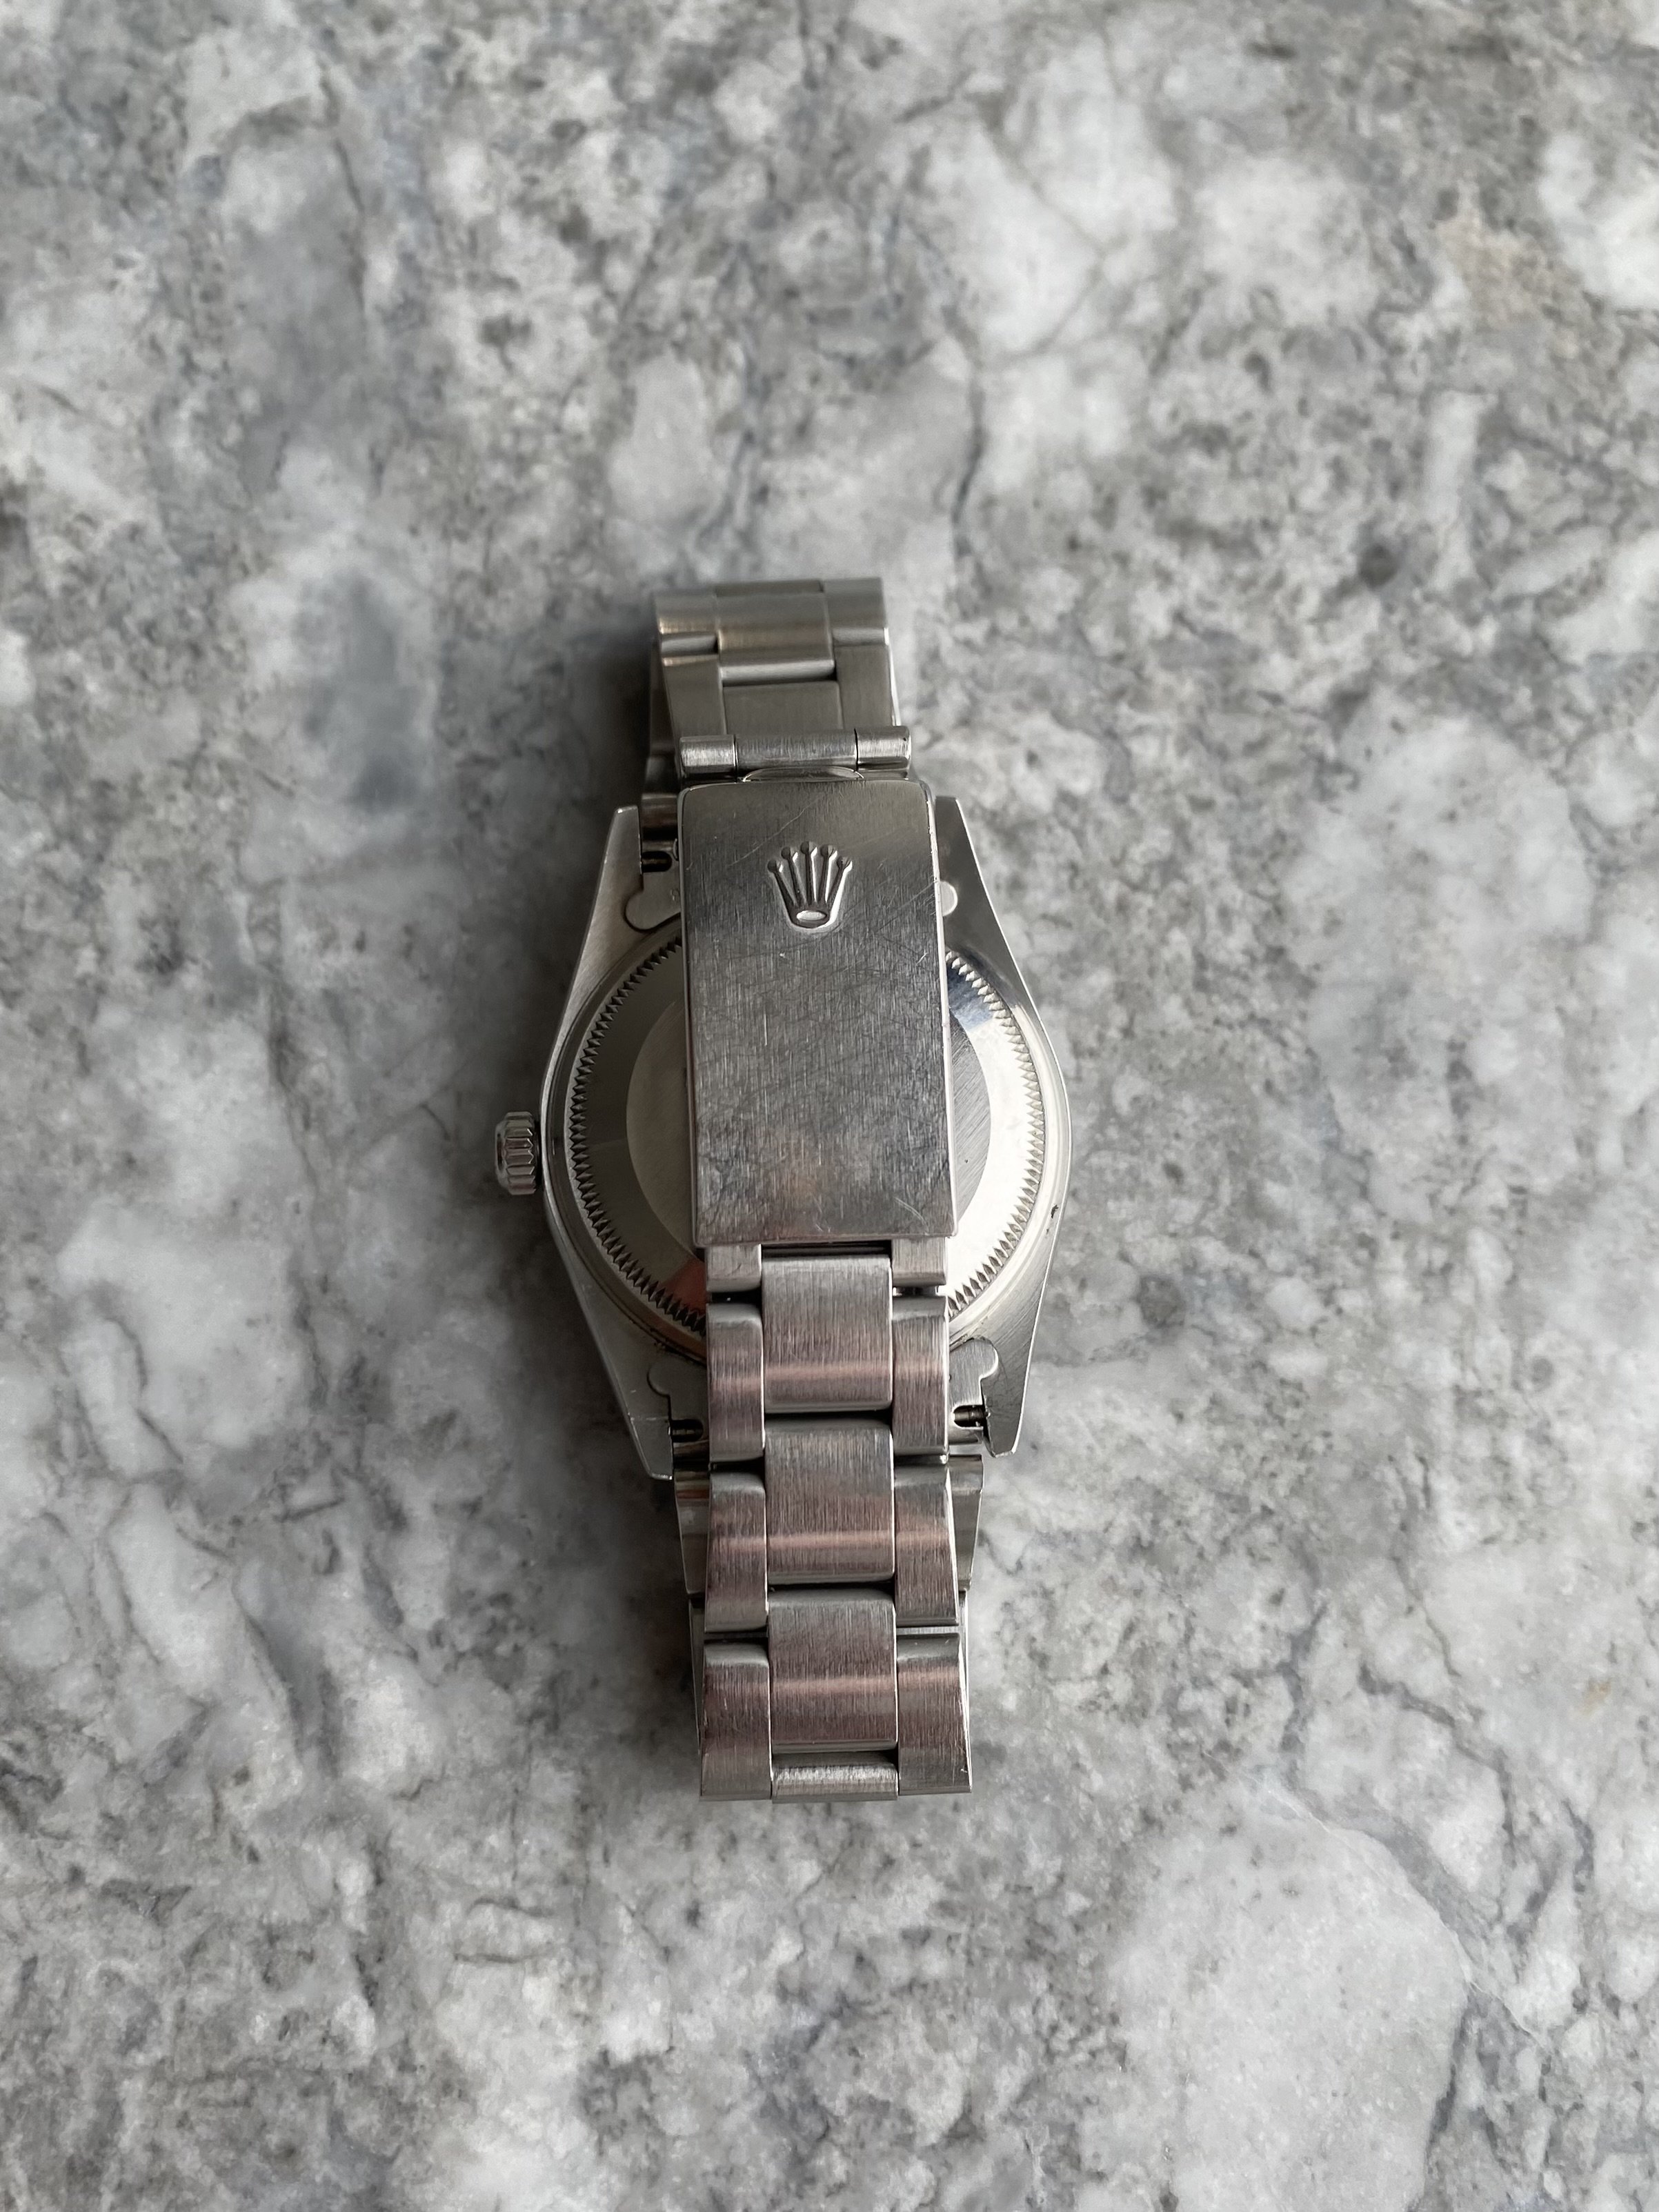 Rolex OP 15200. — Danny's Vintage Watches